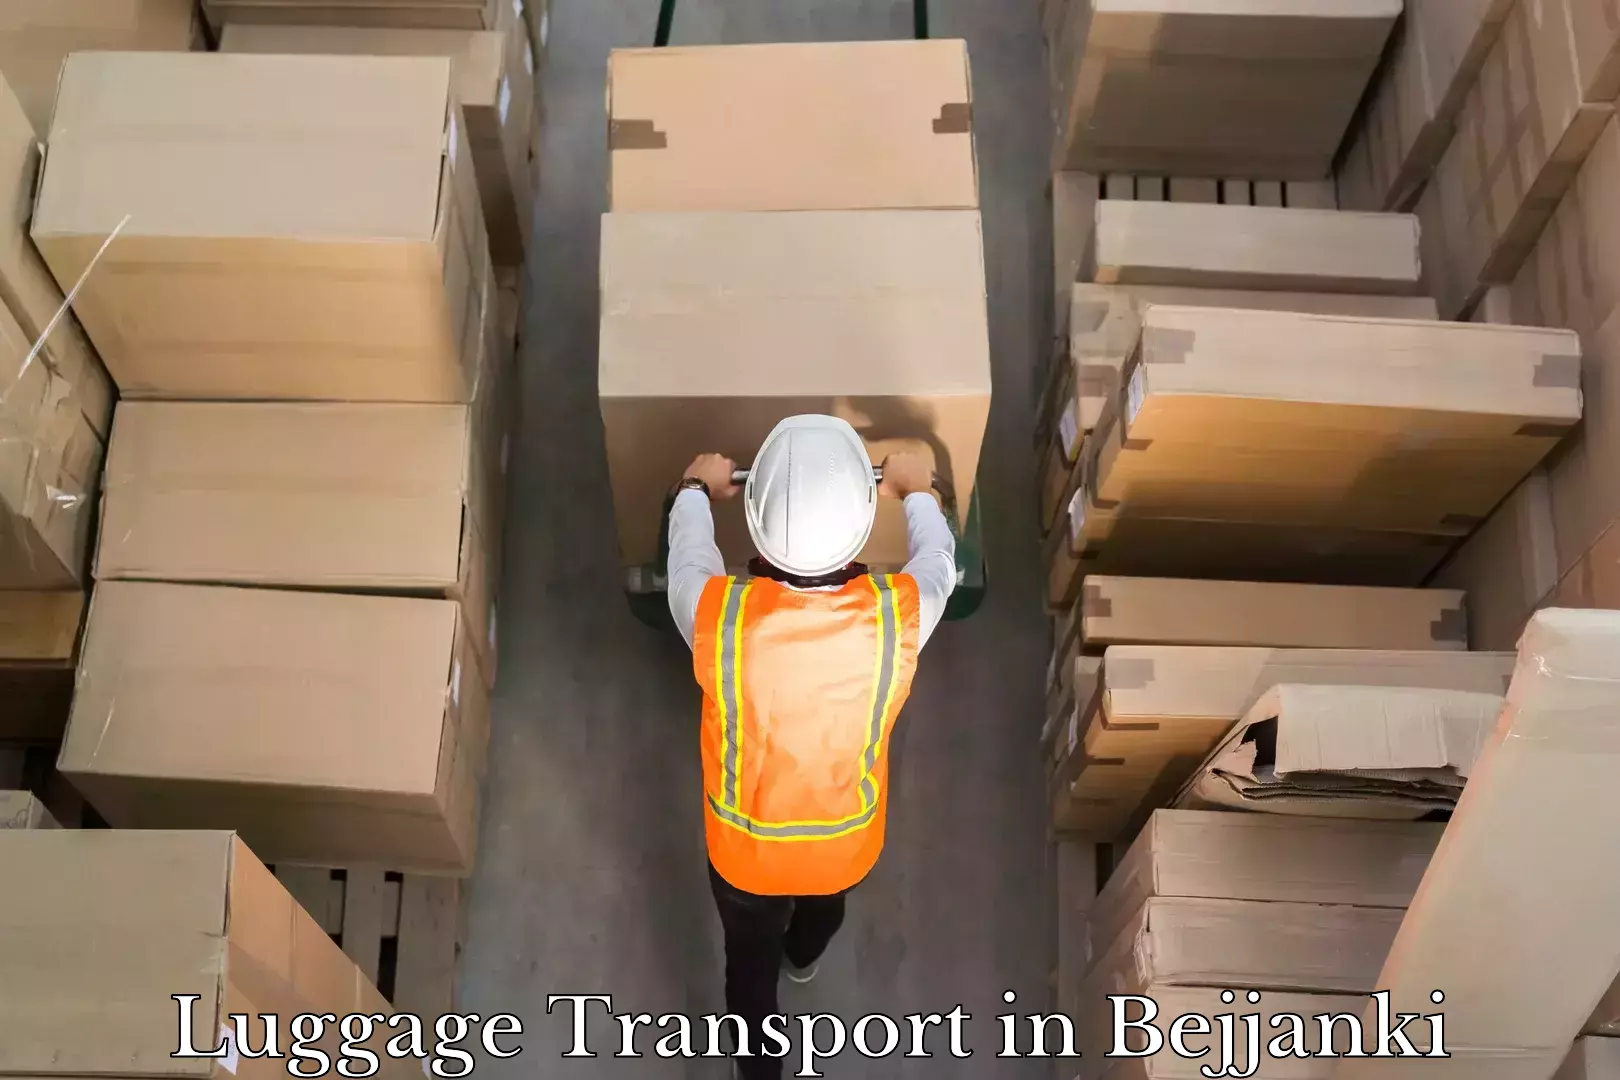 Domestic luggage transport in Bejjanki